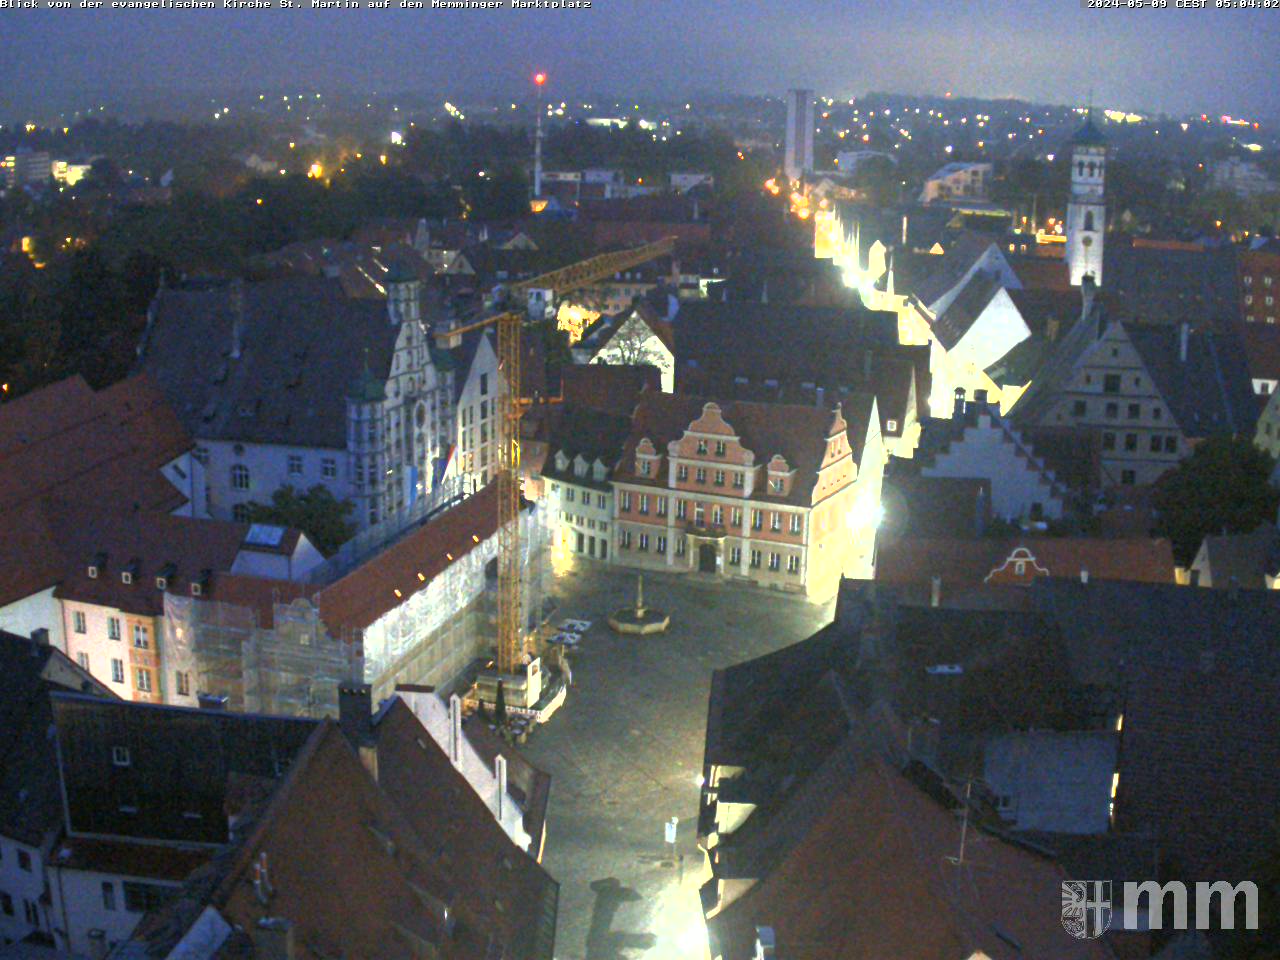 Panoramawebcam: Blick von der evang. Kirche St. Martin auf den Memminger Marktplatz